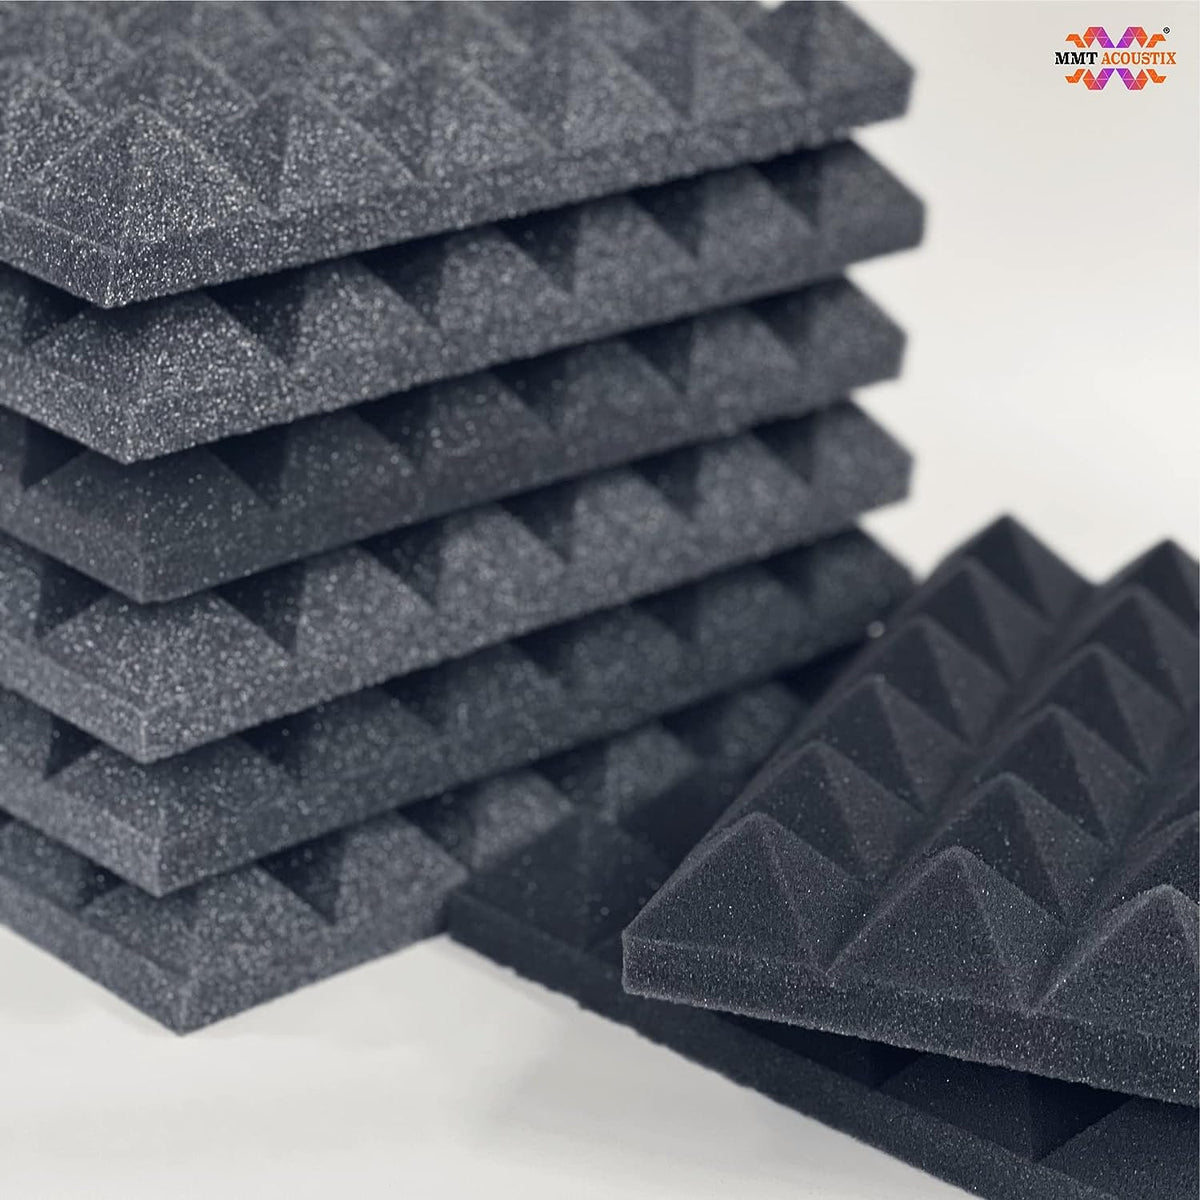 Pyramid Foam — Sound Zero